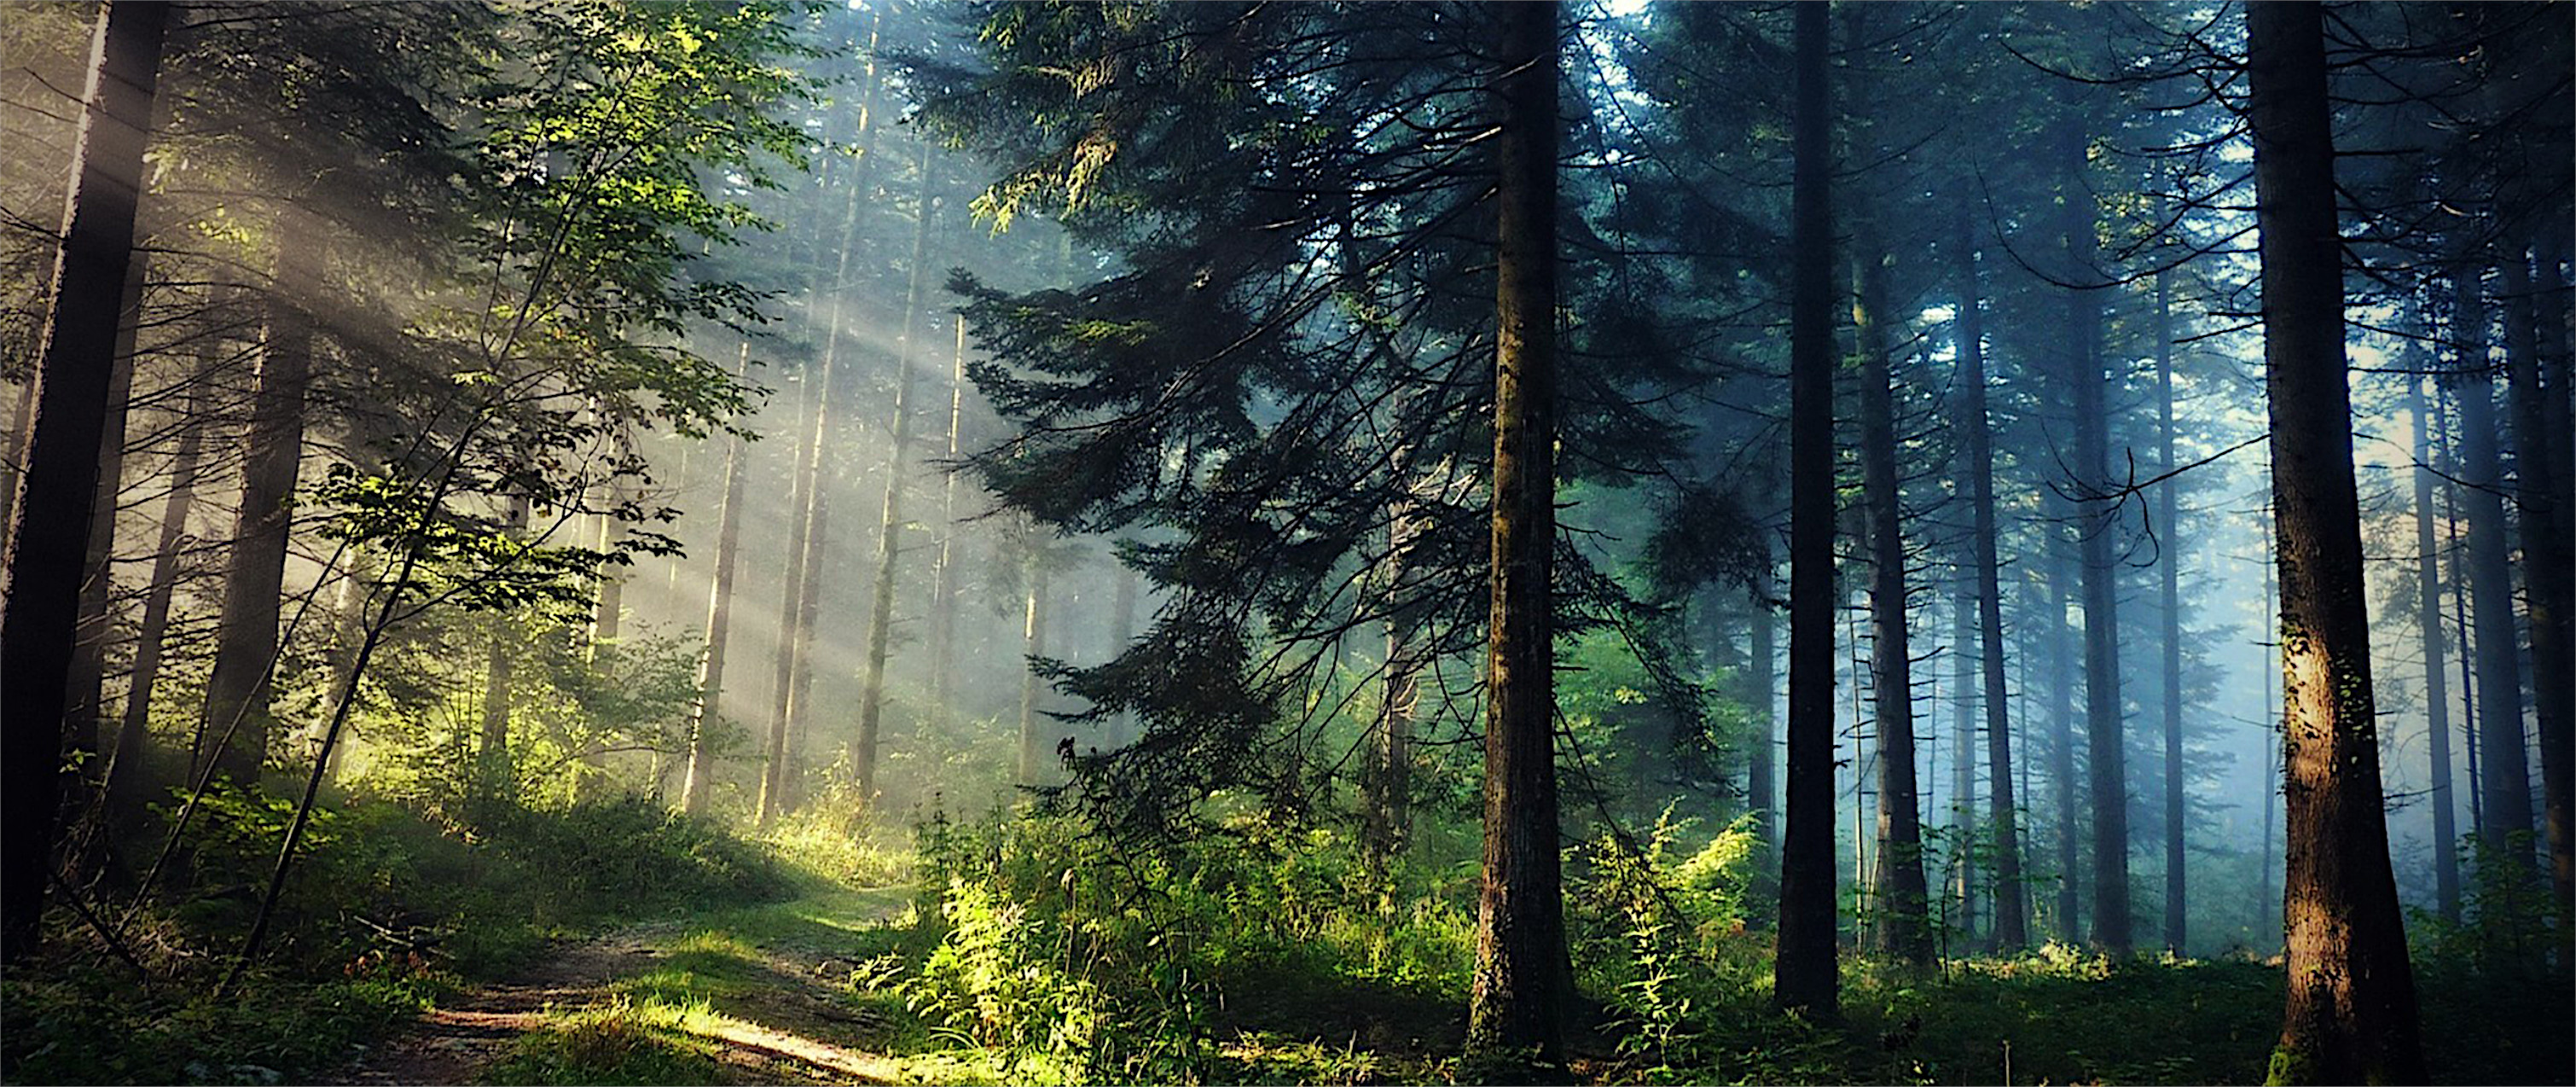 免费照片阳光照亮了针叶林中的一条土路